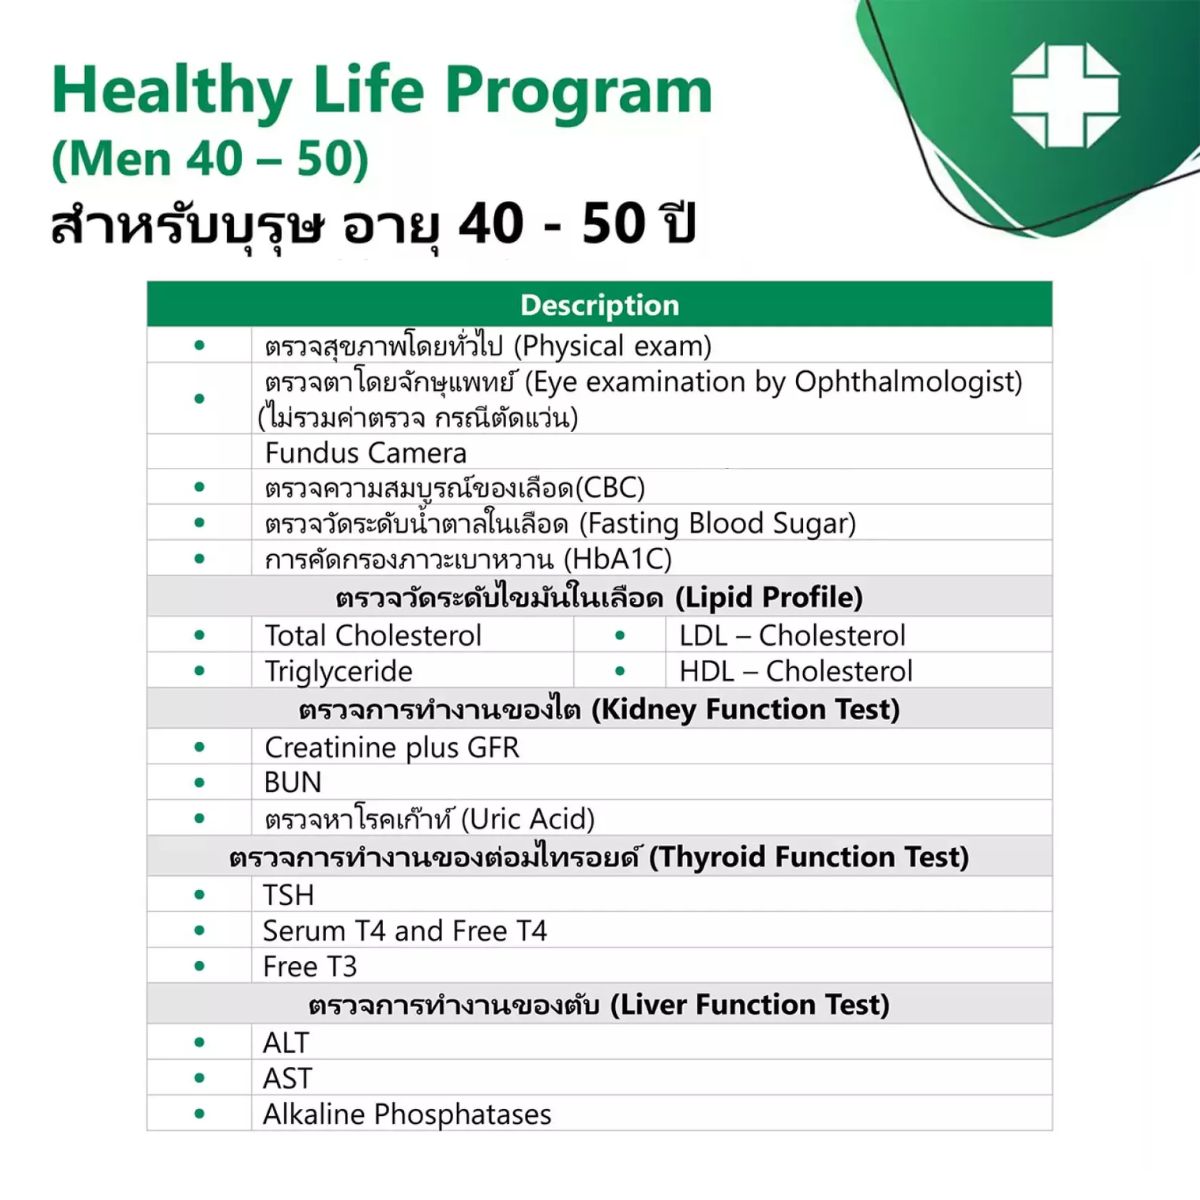 เกี่ยวกับสินค้า [E-Vo] ตรวจสุขภาพเริ่มต้น (สุภาพบุรุษ 40 - 50 ปี) Healthy Life Program - สมิติเวชศรีนครินทร์